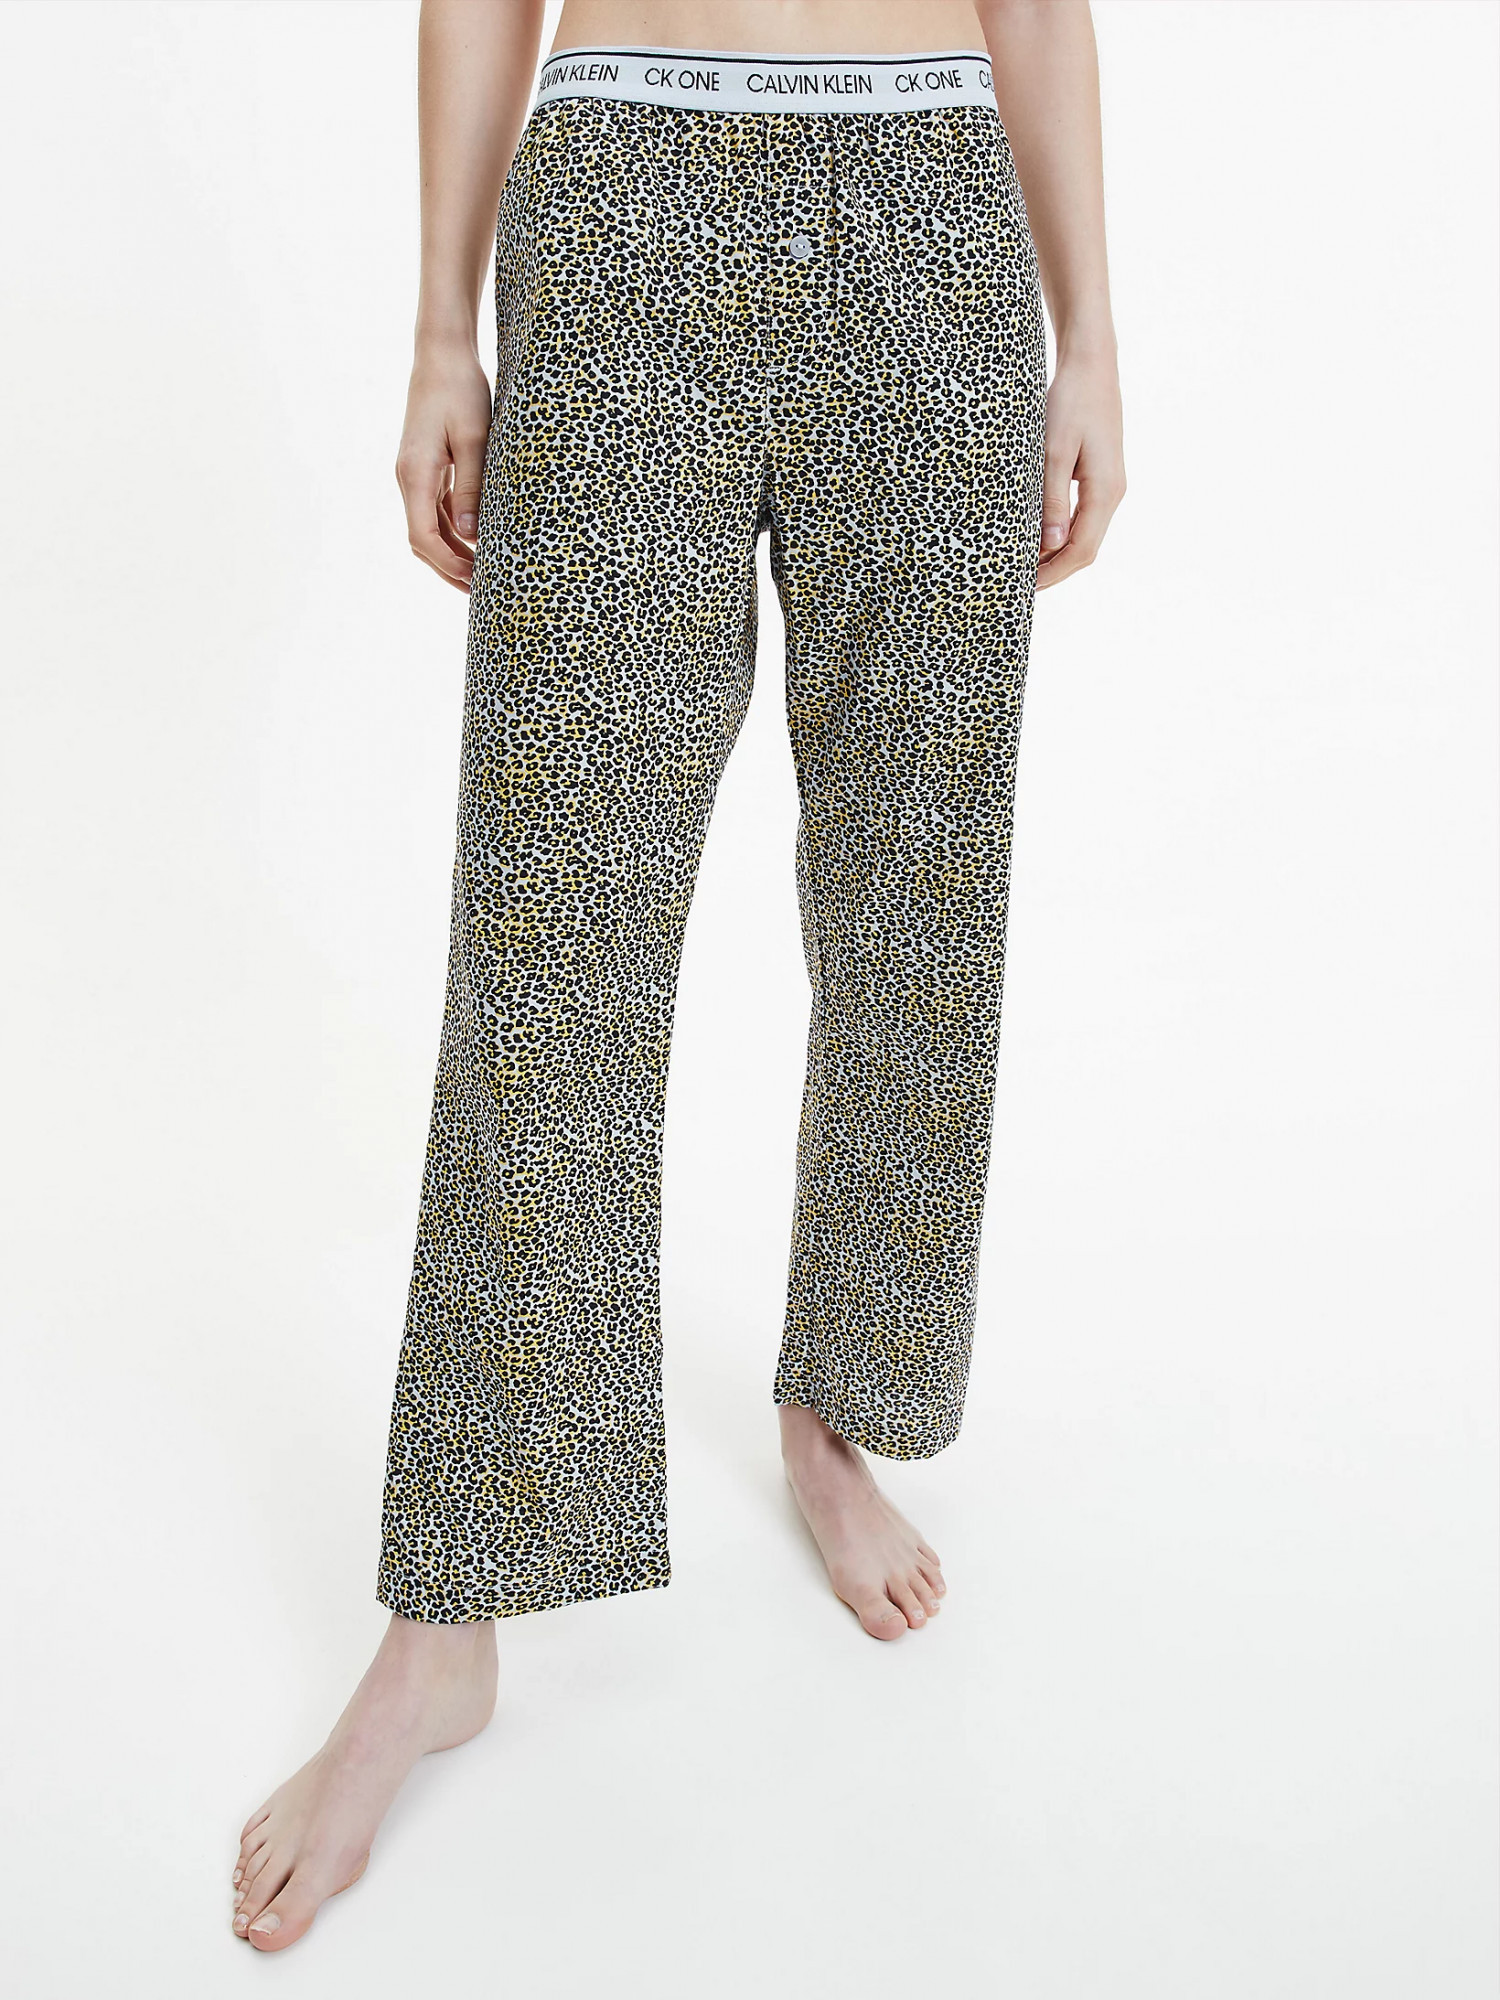 Dámské pyžamové kalhoty QS6433E - V4L Fialová se zvířecím vzorem - Calvin Klein Velikost: L, Barvy: fialová vzor